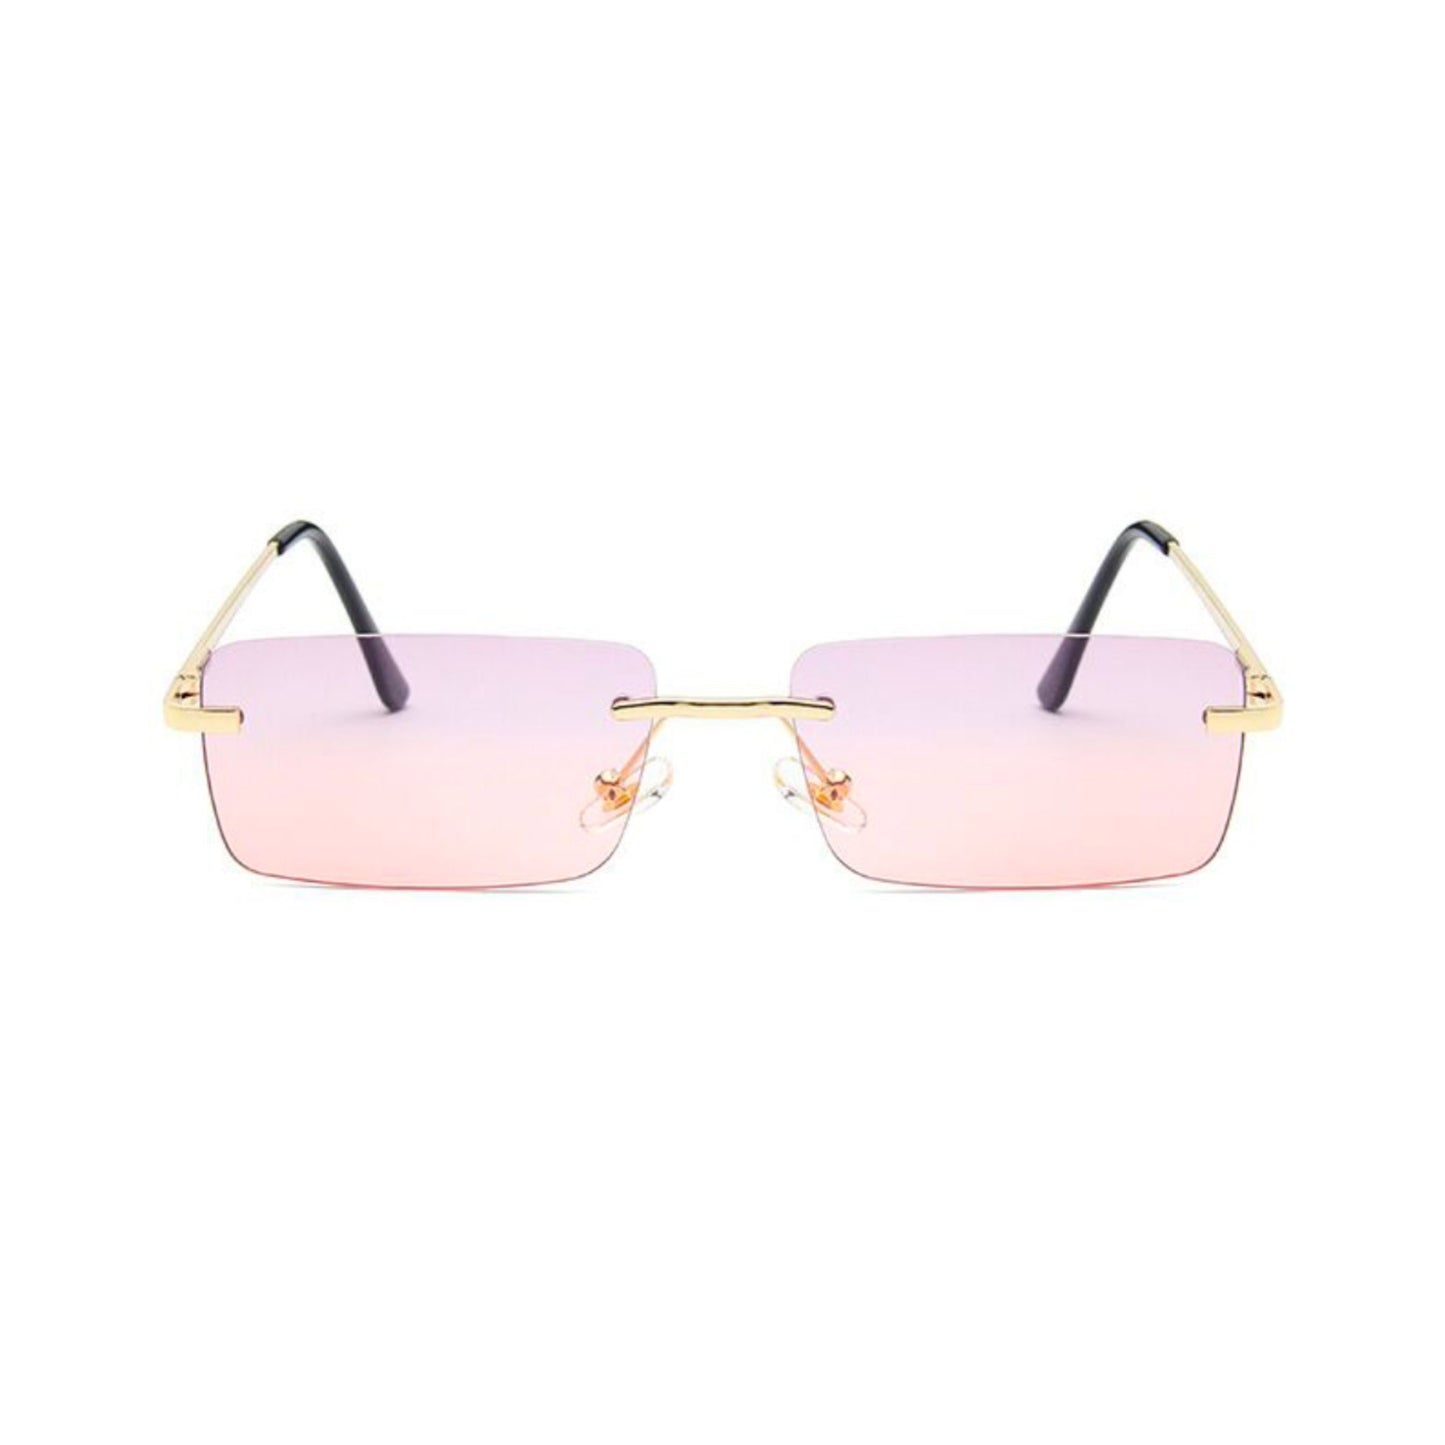 Ορθογώνια Γυαλιά Ηλίου Tez της Exposure Sunglasses με προστασία UV400 σε χρυσό χρώμα σκελετού και ροζ φακό.